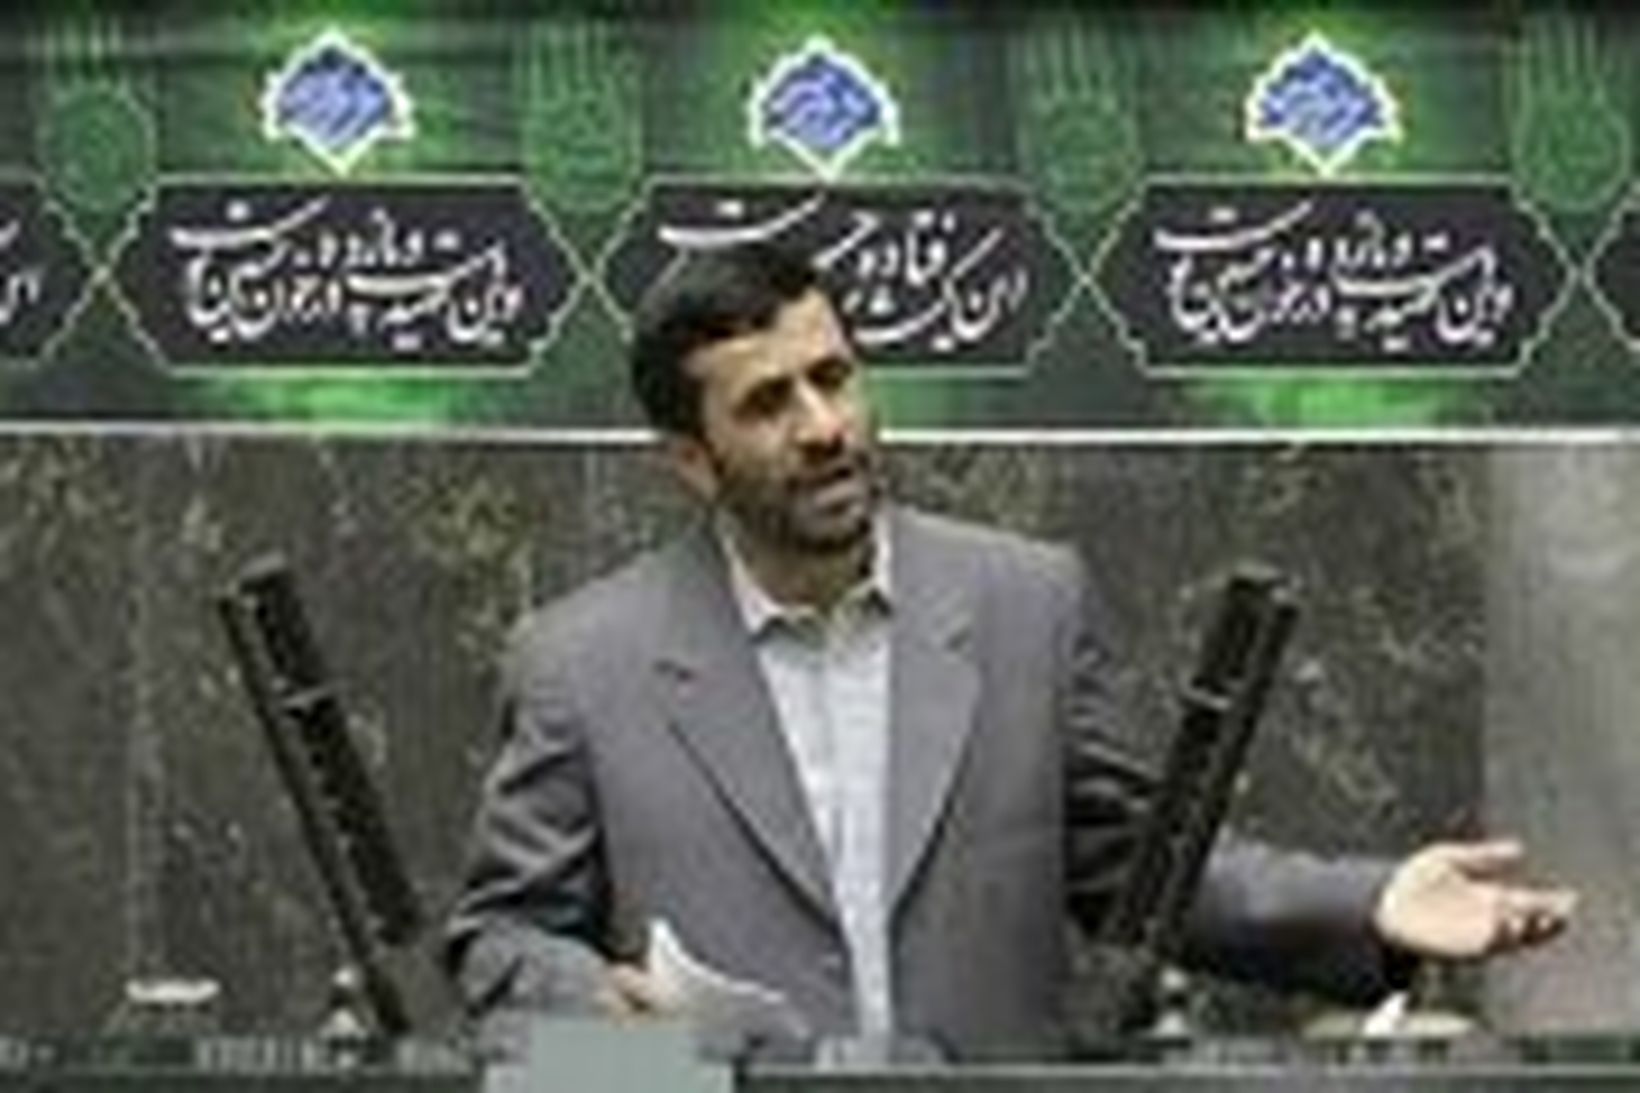 Mahmoud Ahmadinejad, forseti Írans